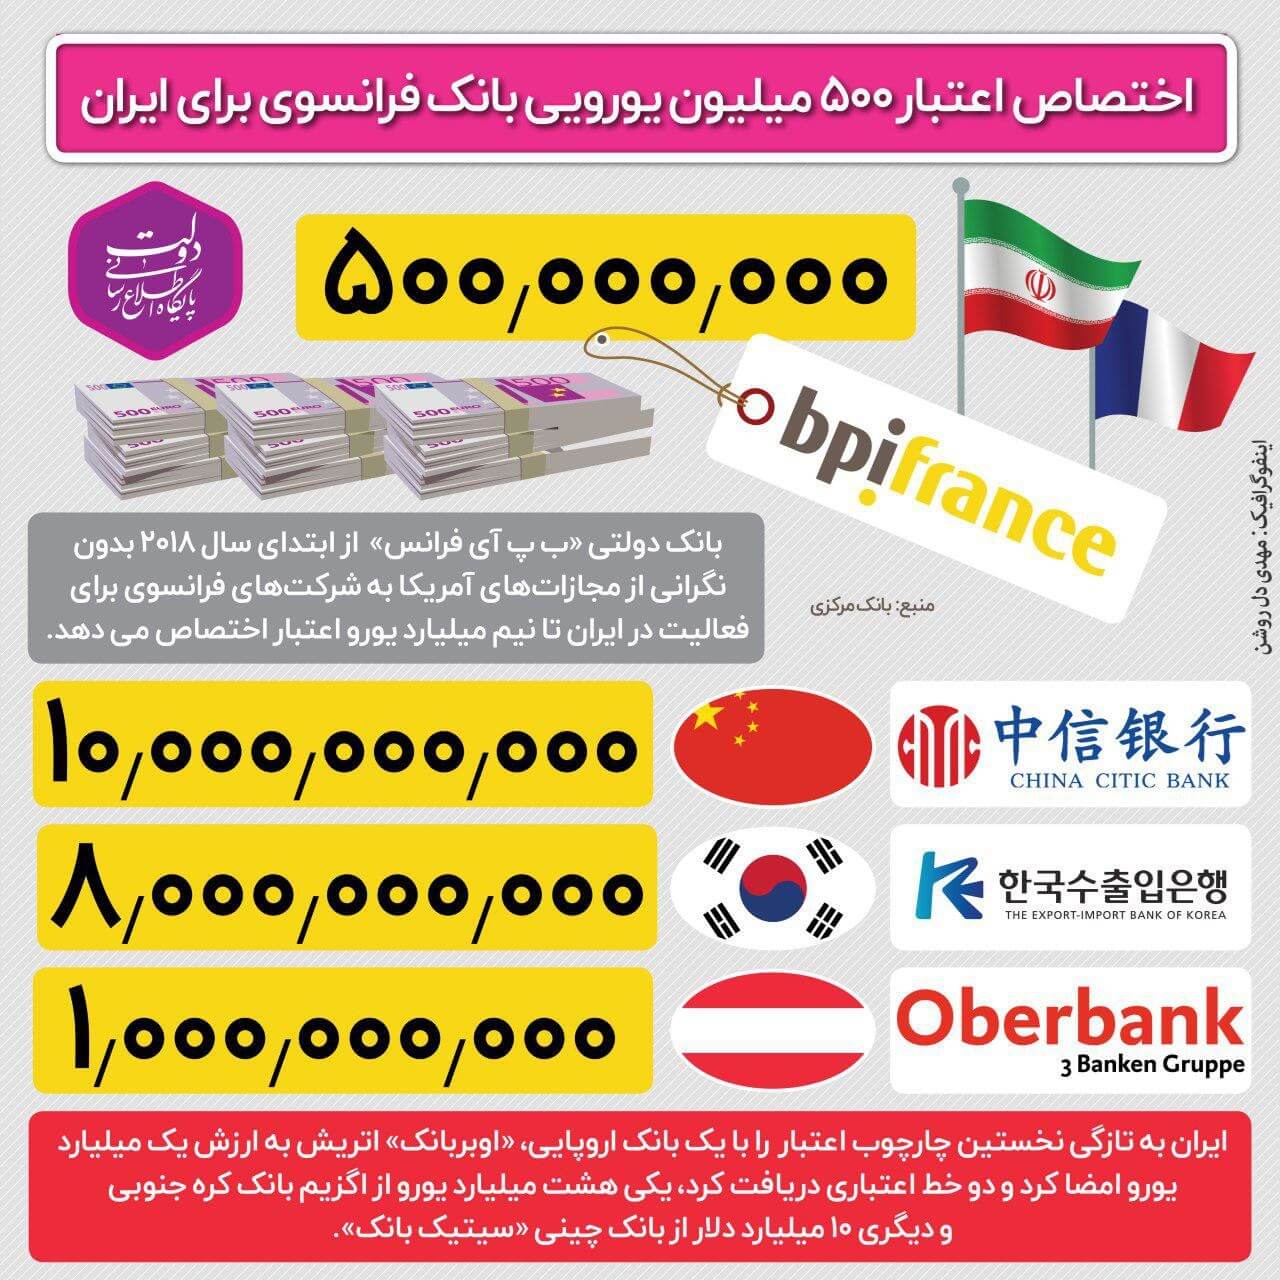 اینفوگرافیک روابط بانکی ایران و بانک های خارجی